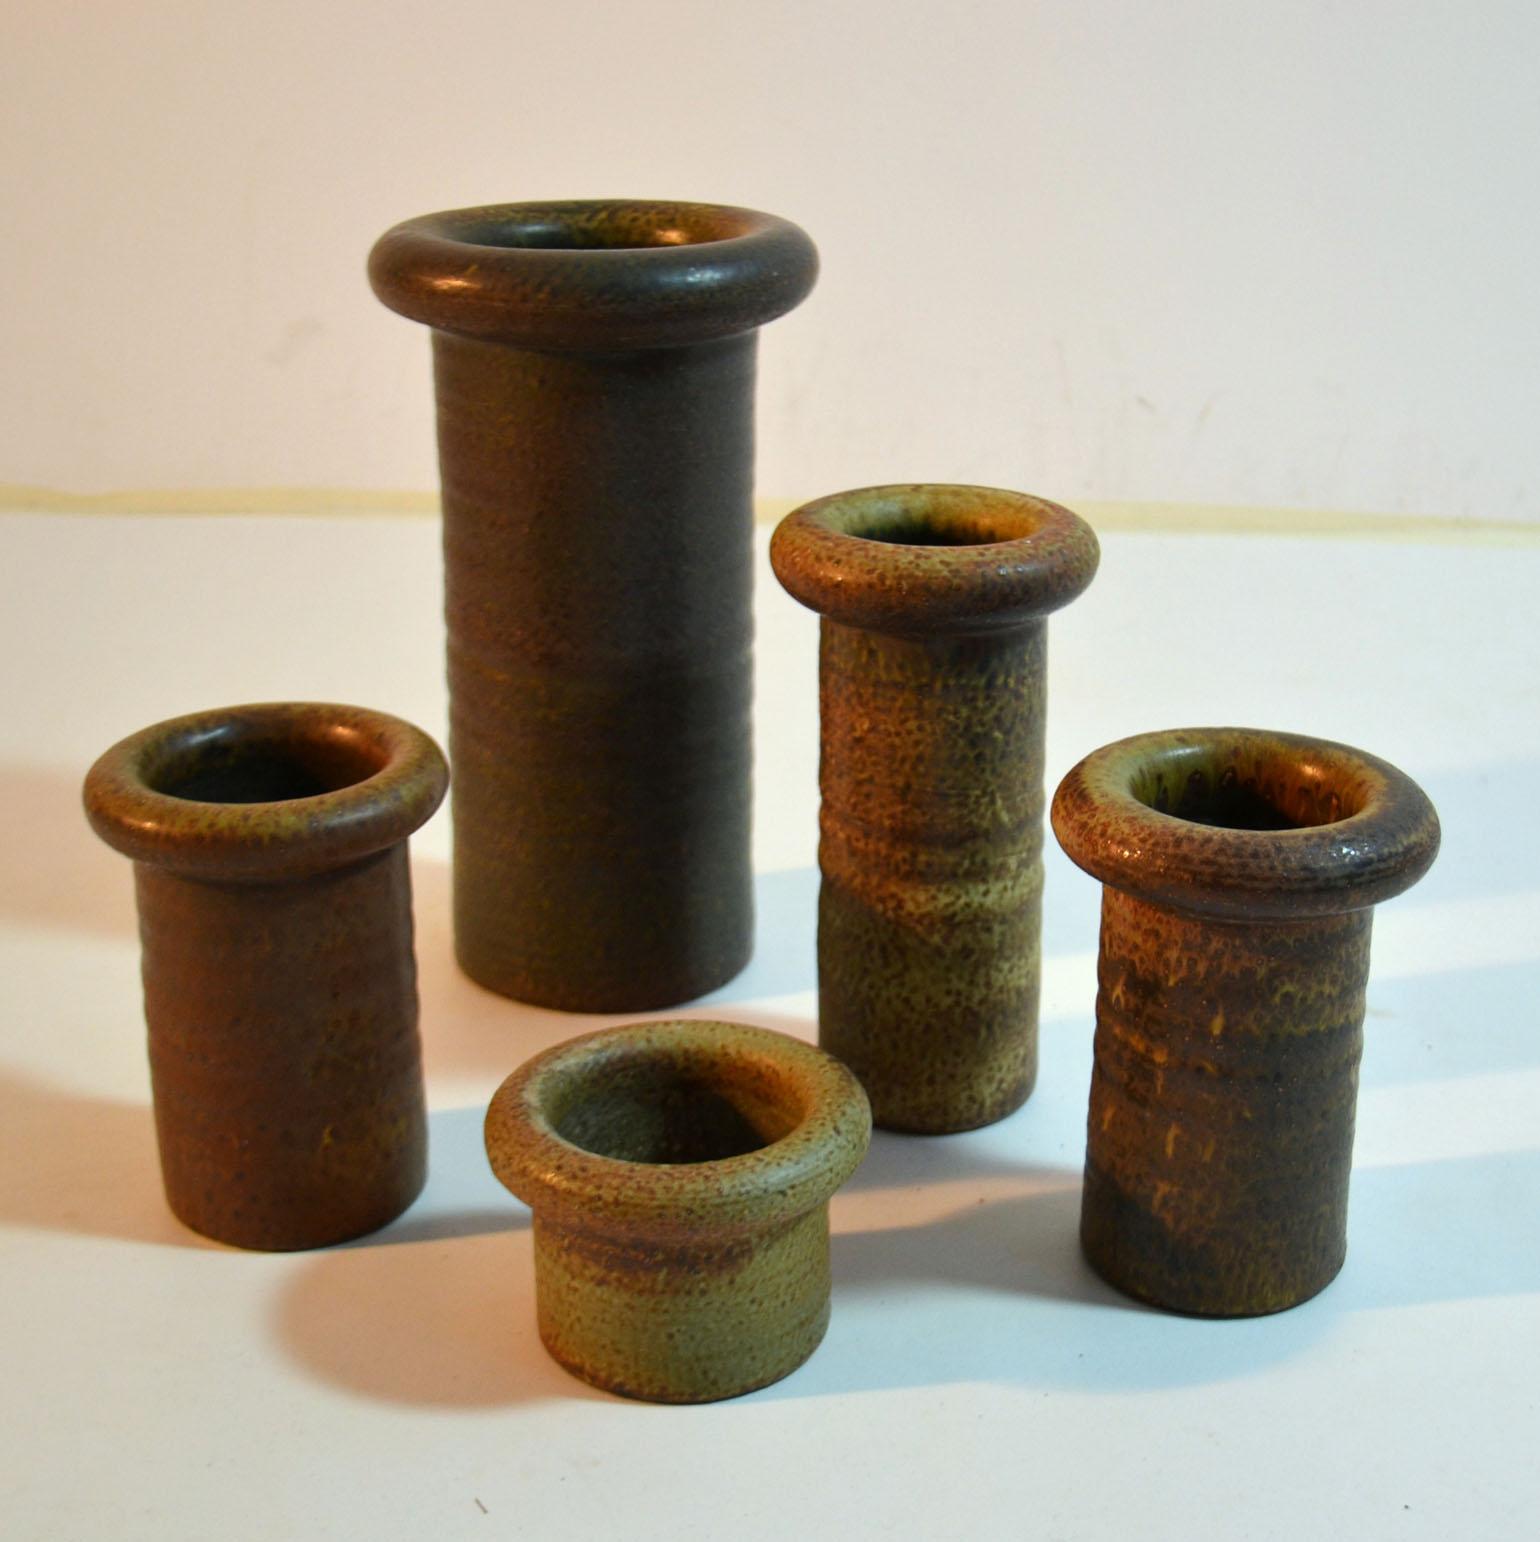 Dutch Group of Mid Century Ceramic Studio Vases in Earth Tones